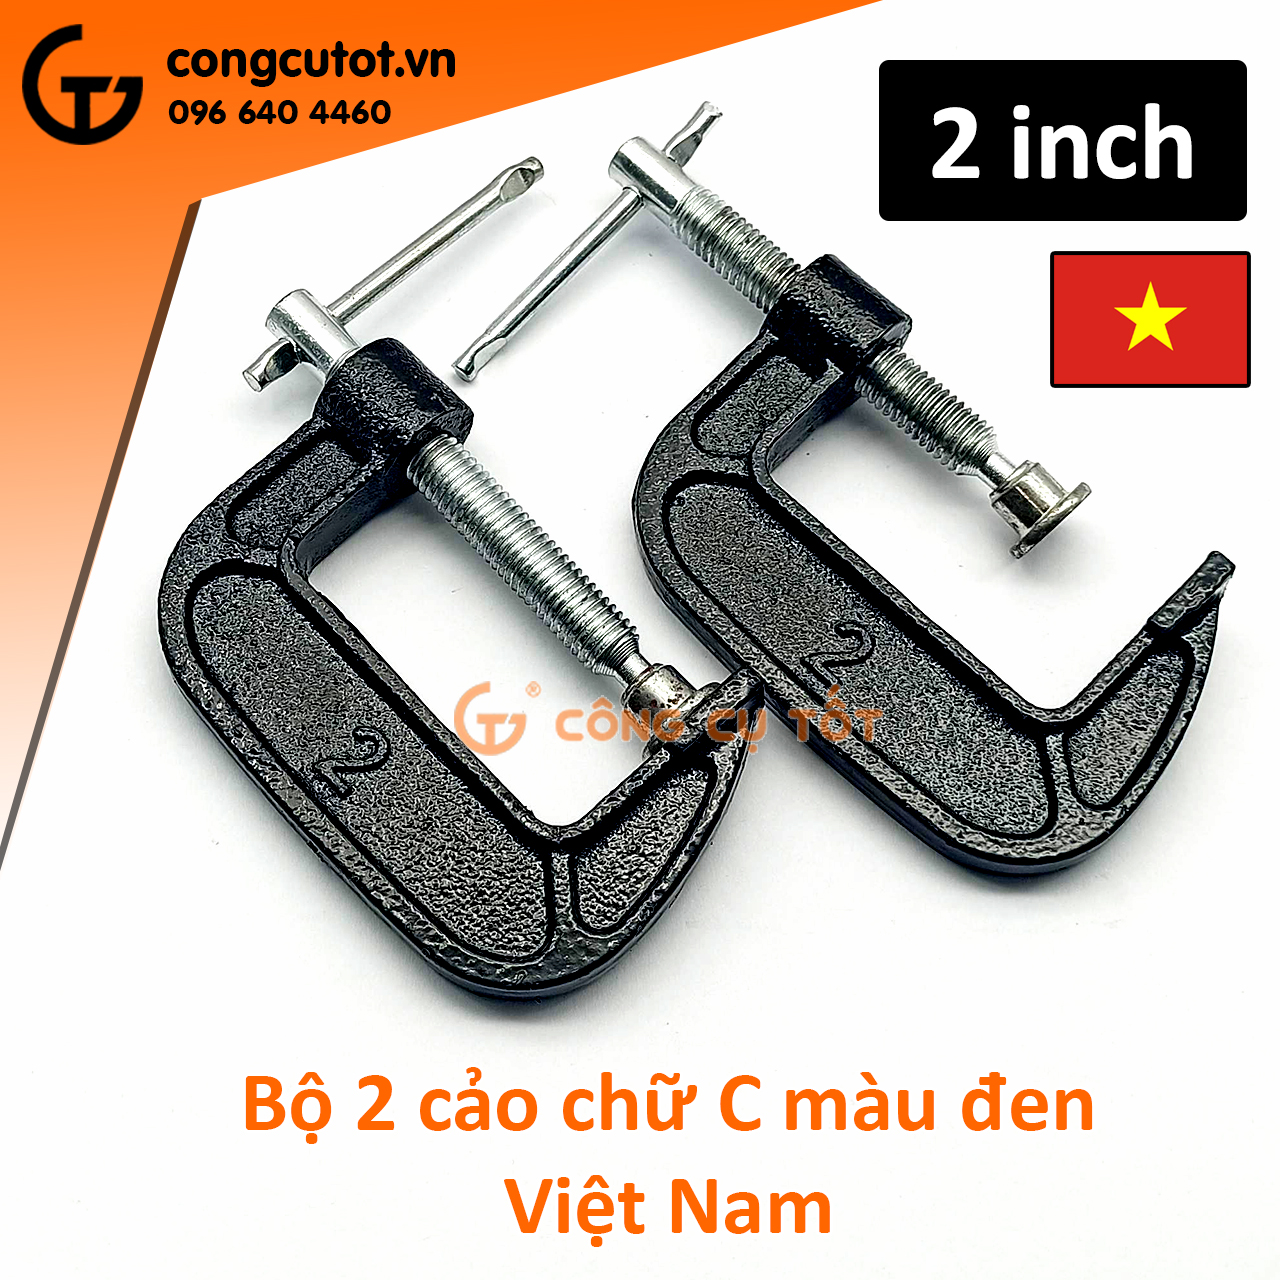 Cặp 2 cảo chữ C Việt Nam màu đen cỡ 2 inch